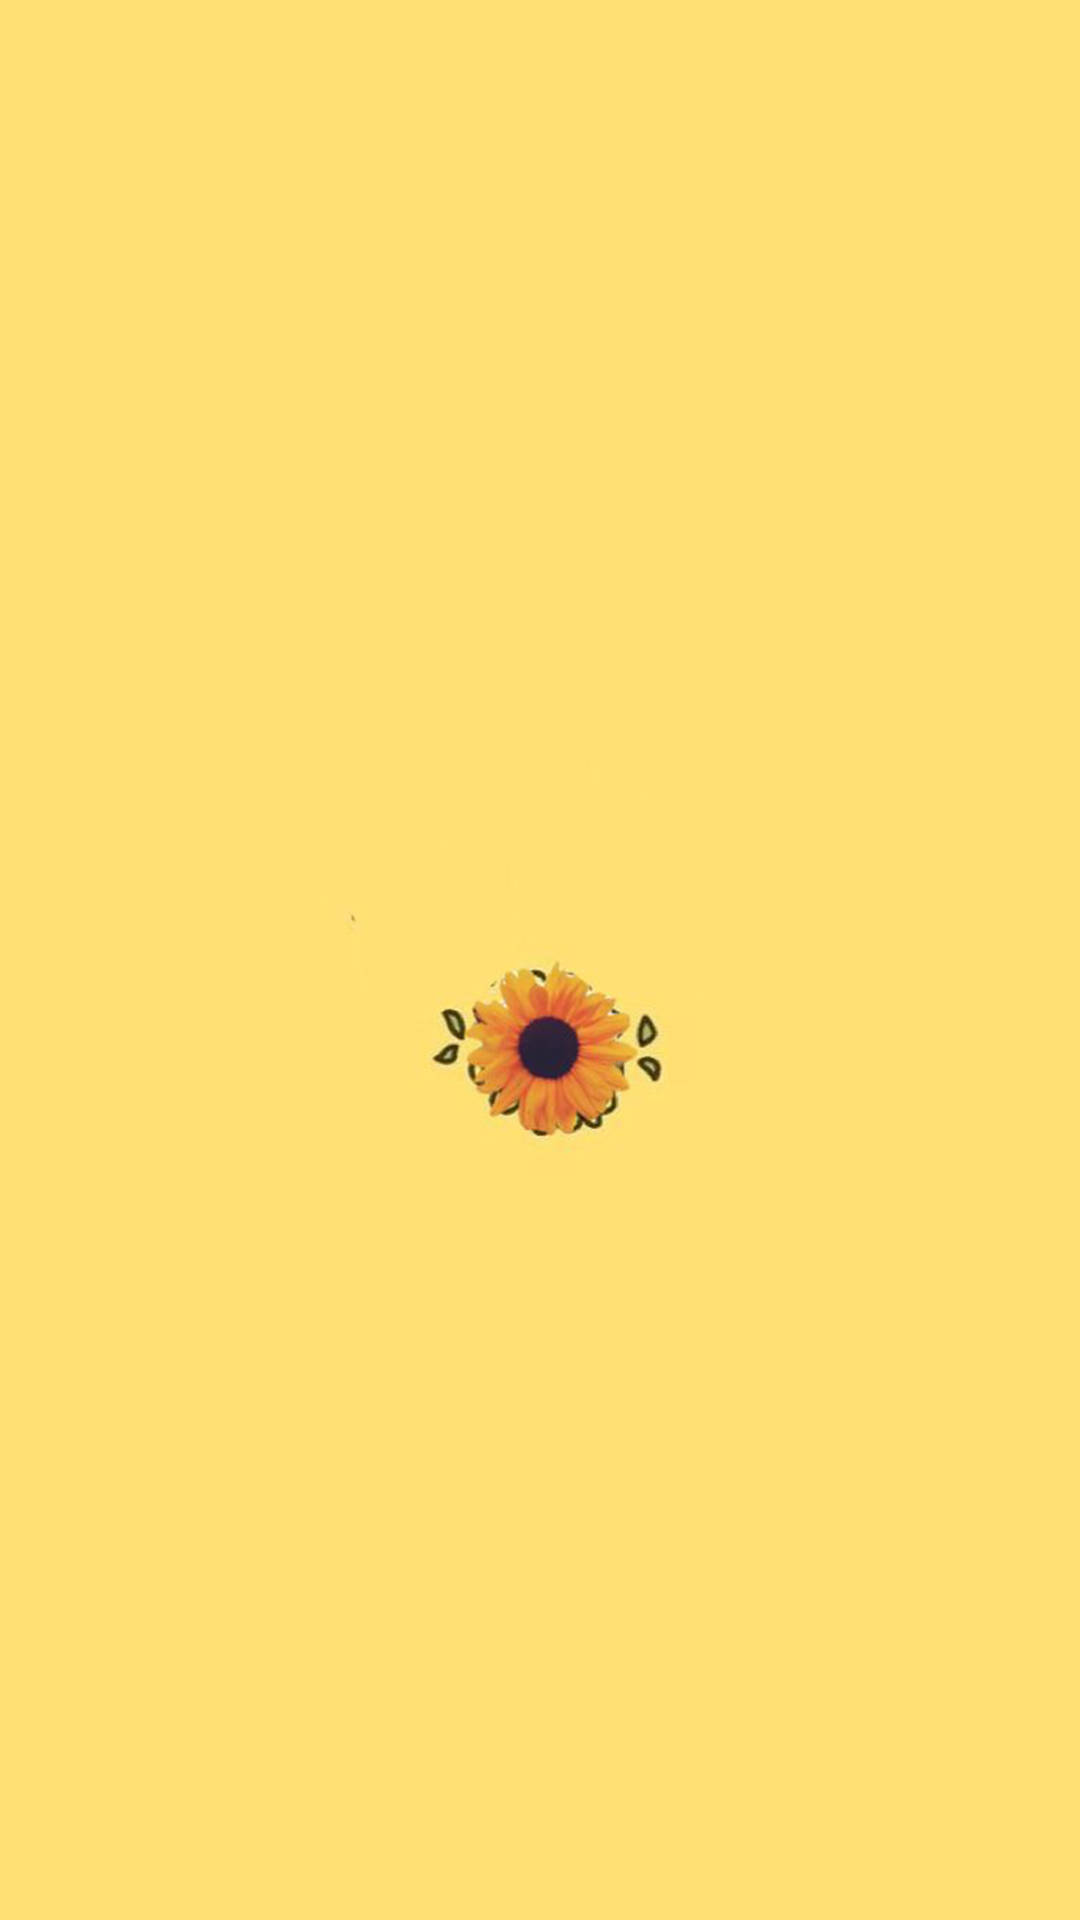 Lone Sunflower Plain Yellow Phone Wallpaper